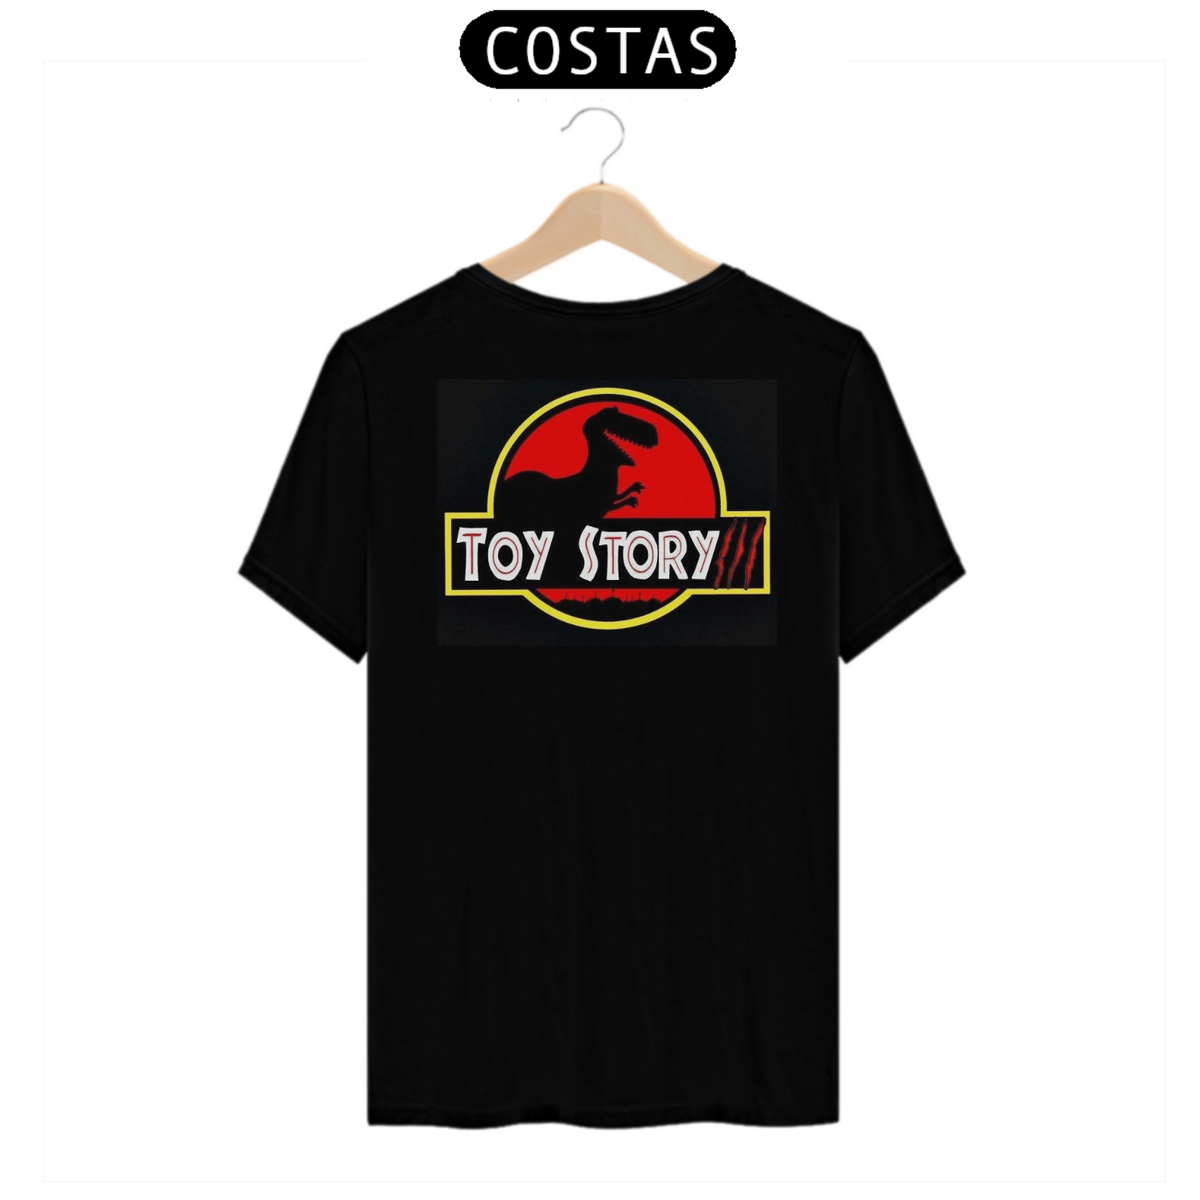 Nome do produto: T-shirt Toy Story